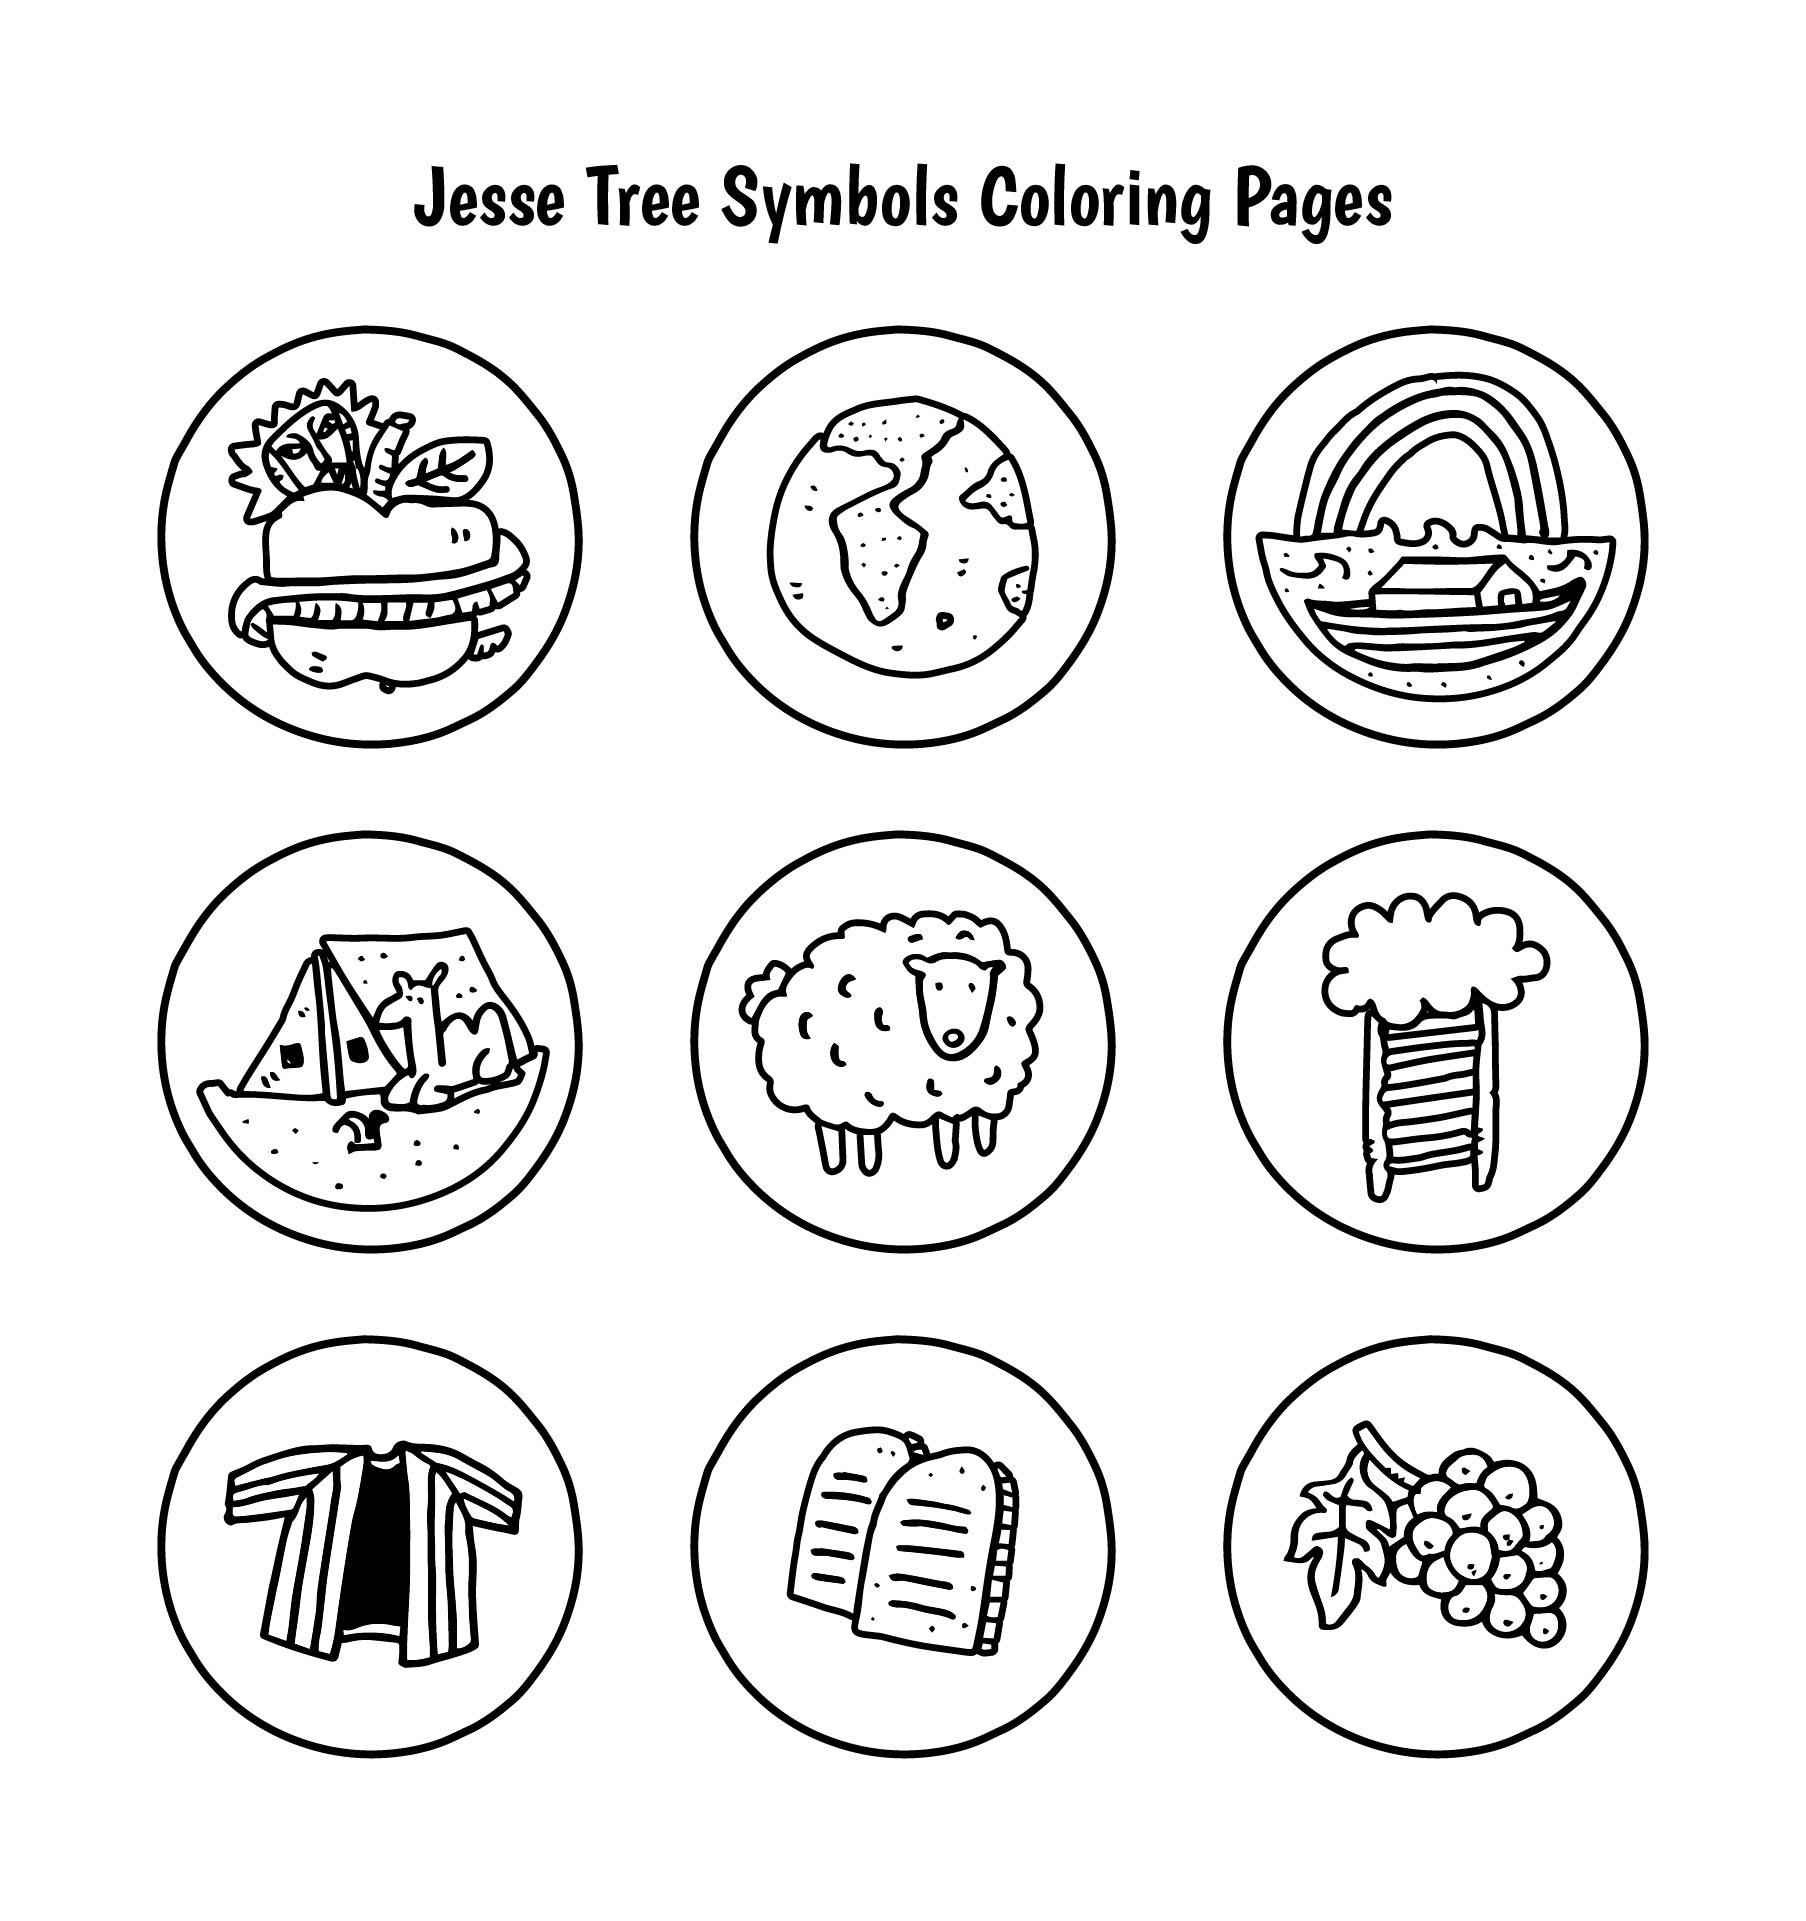 Printable Catholic Jesse Tree Symbols | Printablee